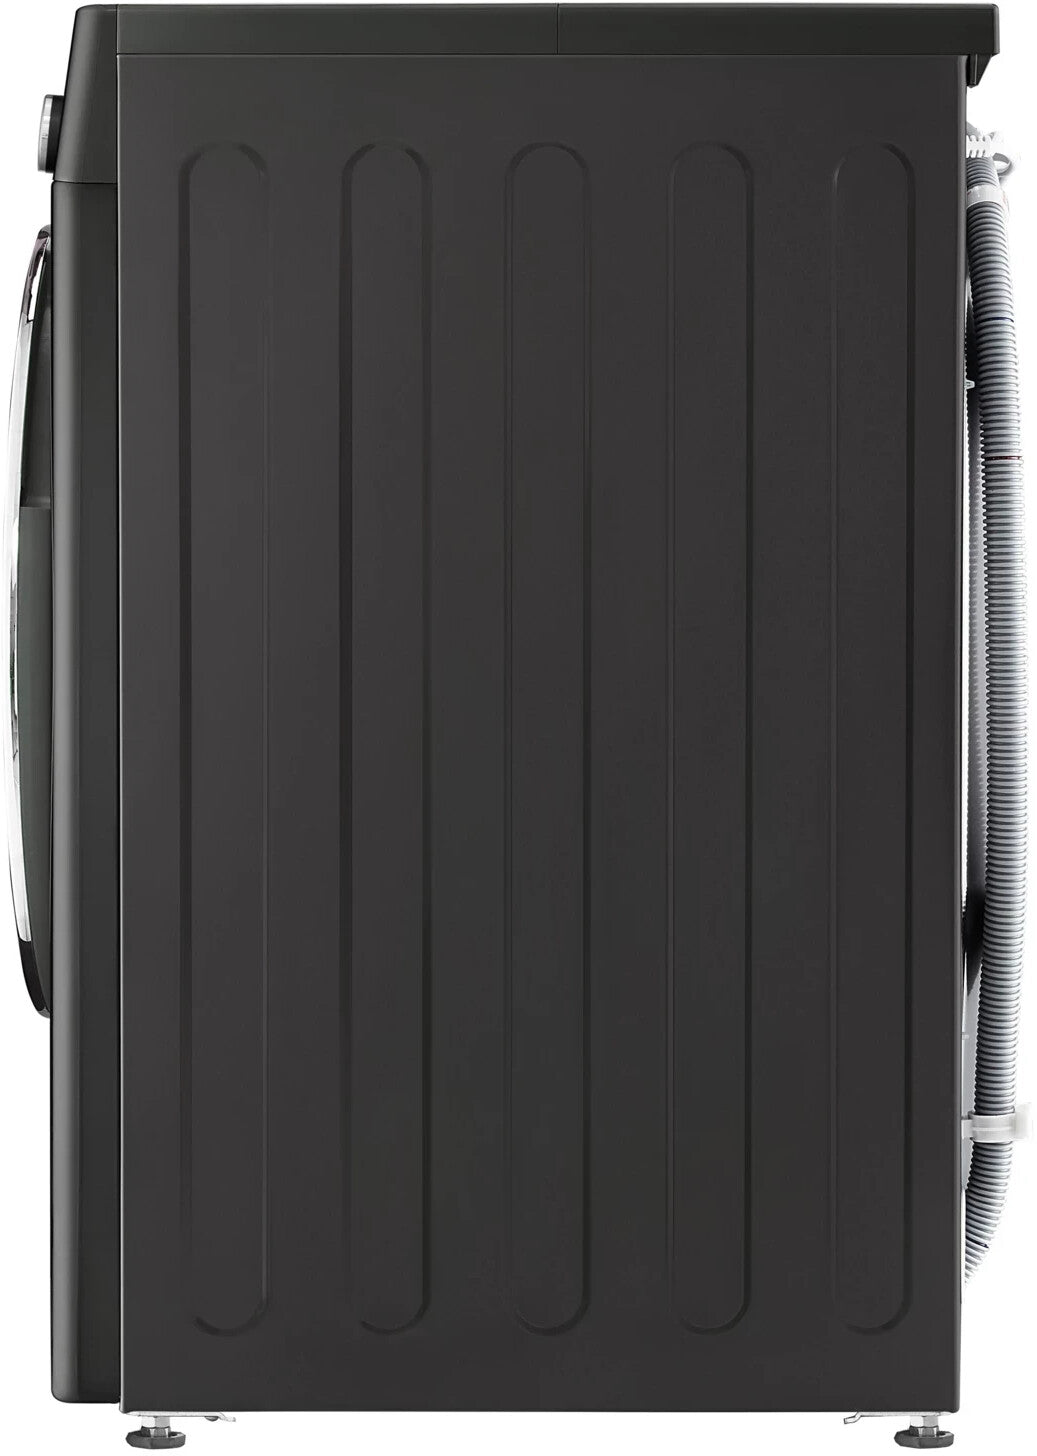 Masina de spalat rufe frontala LG F6WV710P2S AI DD, 10.5 kg, clasa energetica A, 1600 rpm, negru